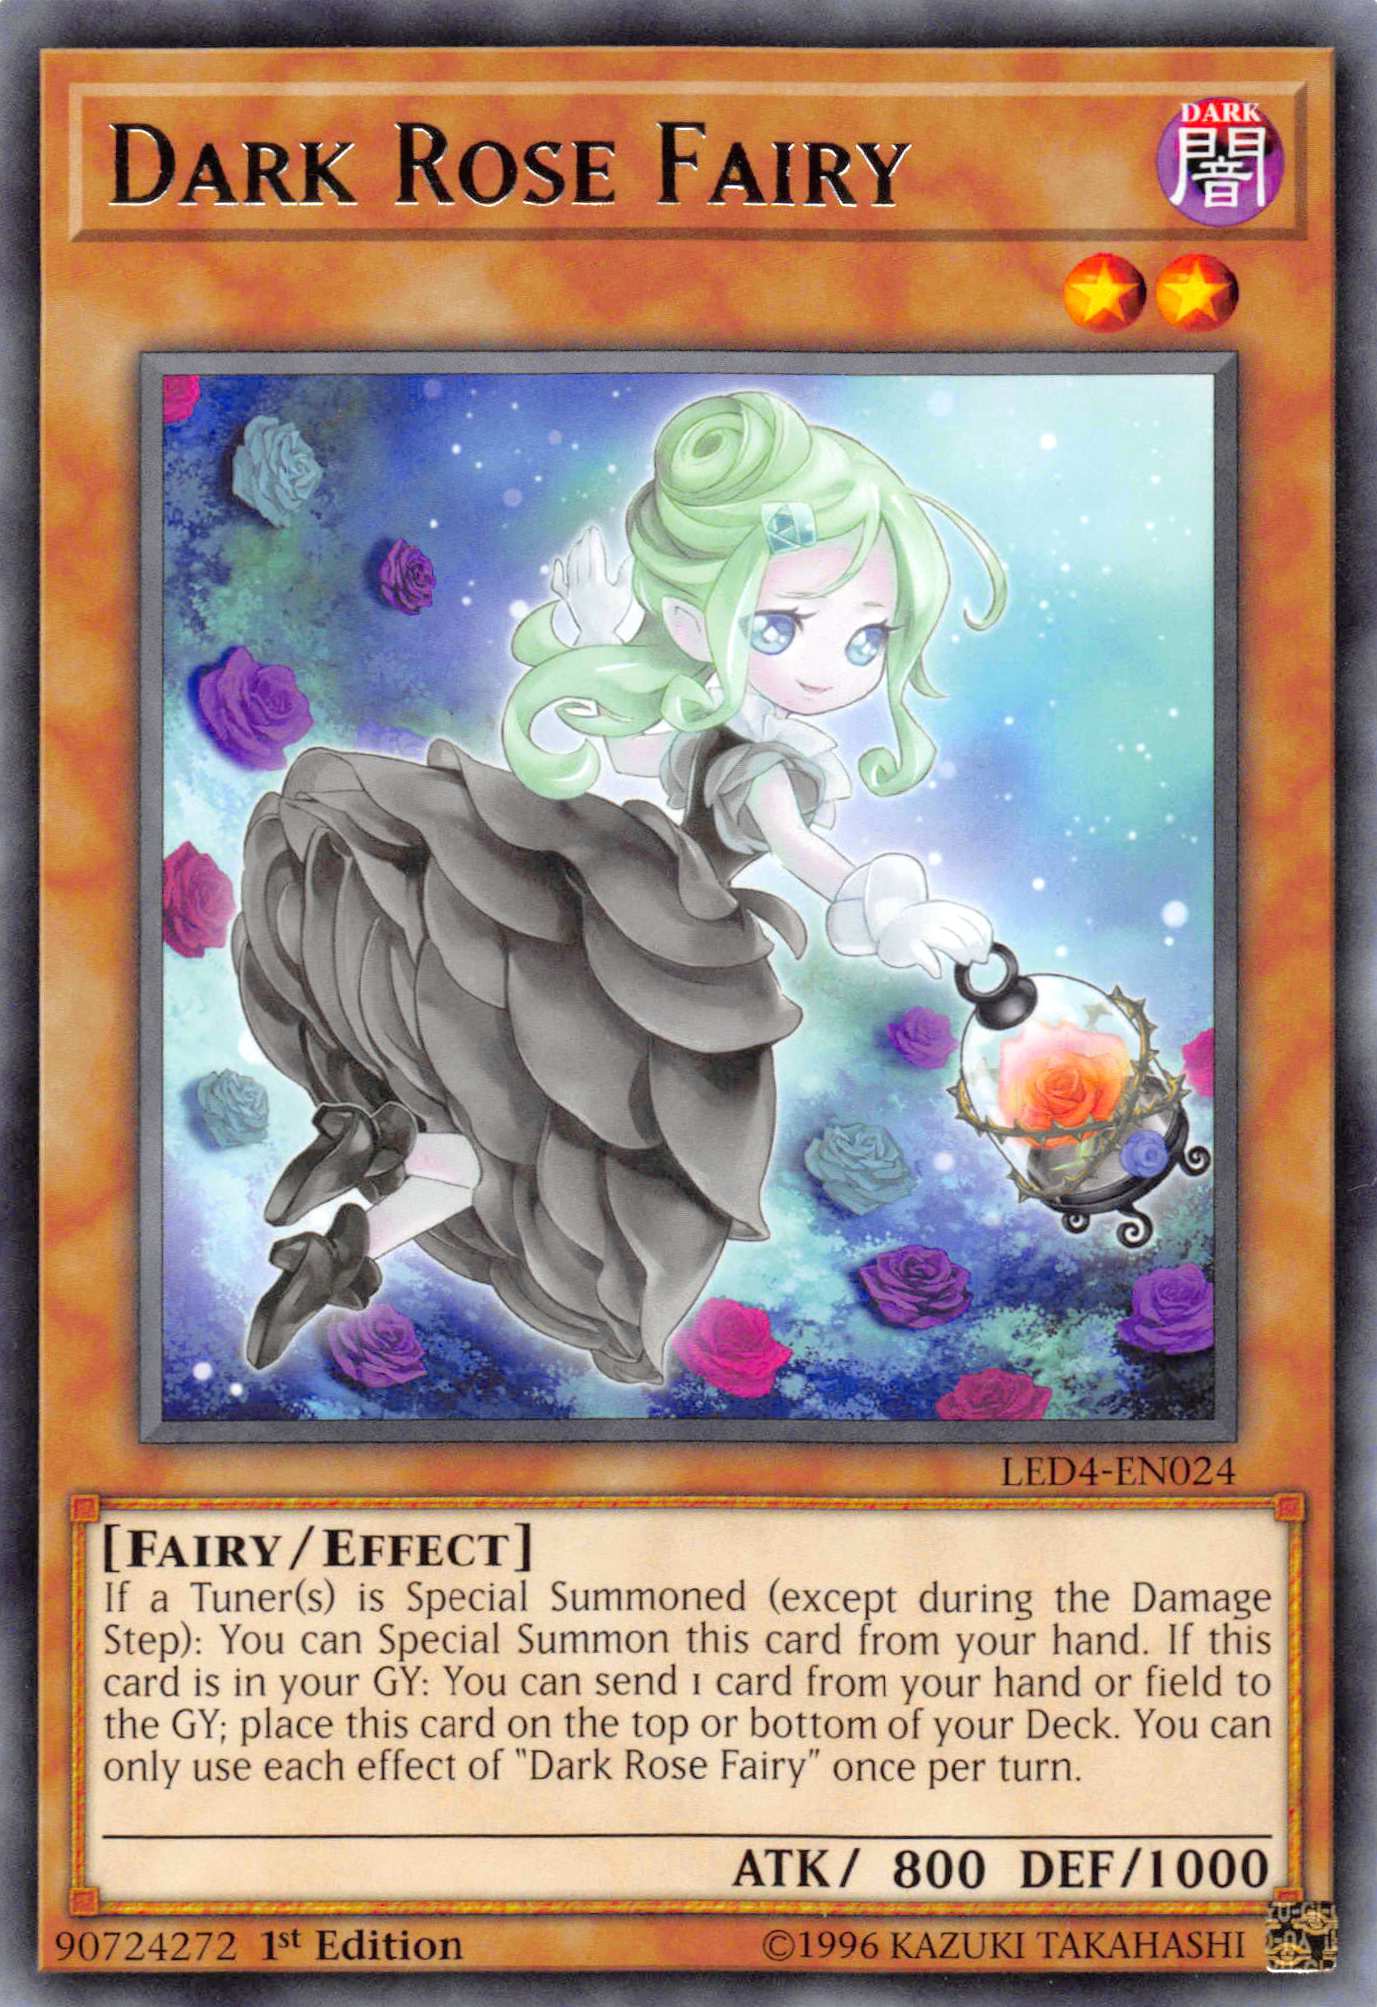 Dark Rose Fairy [LED4-EN024] Rare